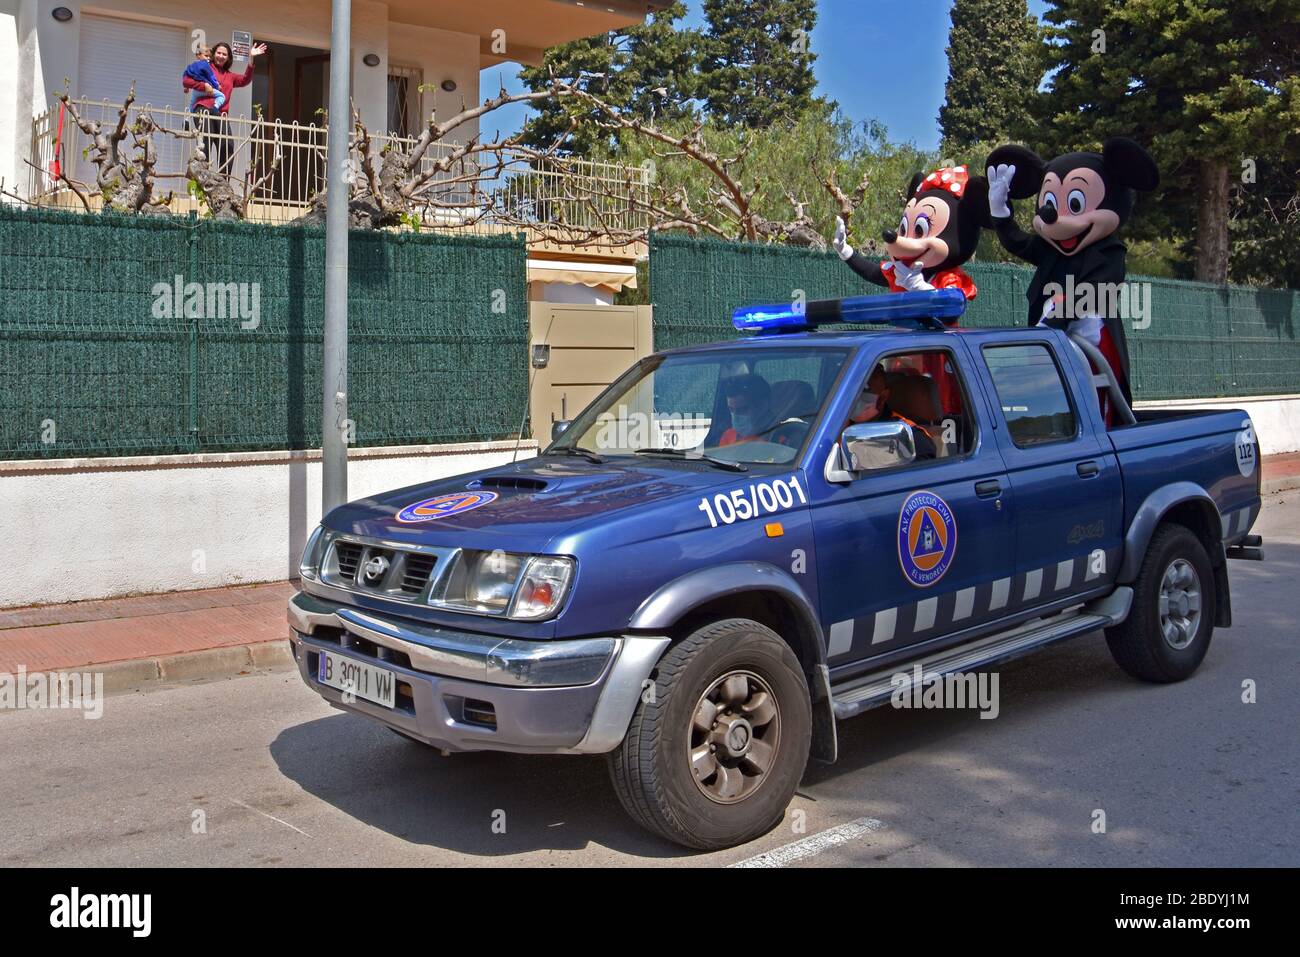 Voluntarios de Protección Civil de el Vendrell vestidos como Mickey y  Minnie Mouse saludan a personas confinadas en sus casas durante la  crisis.Voluntarios de la Protección Civil de el Vendrell, dos de